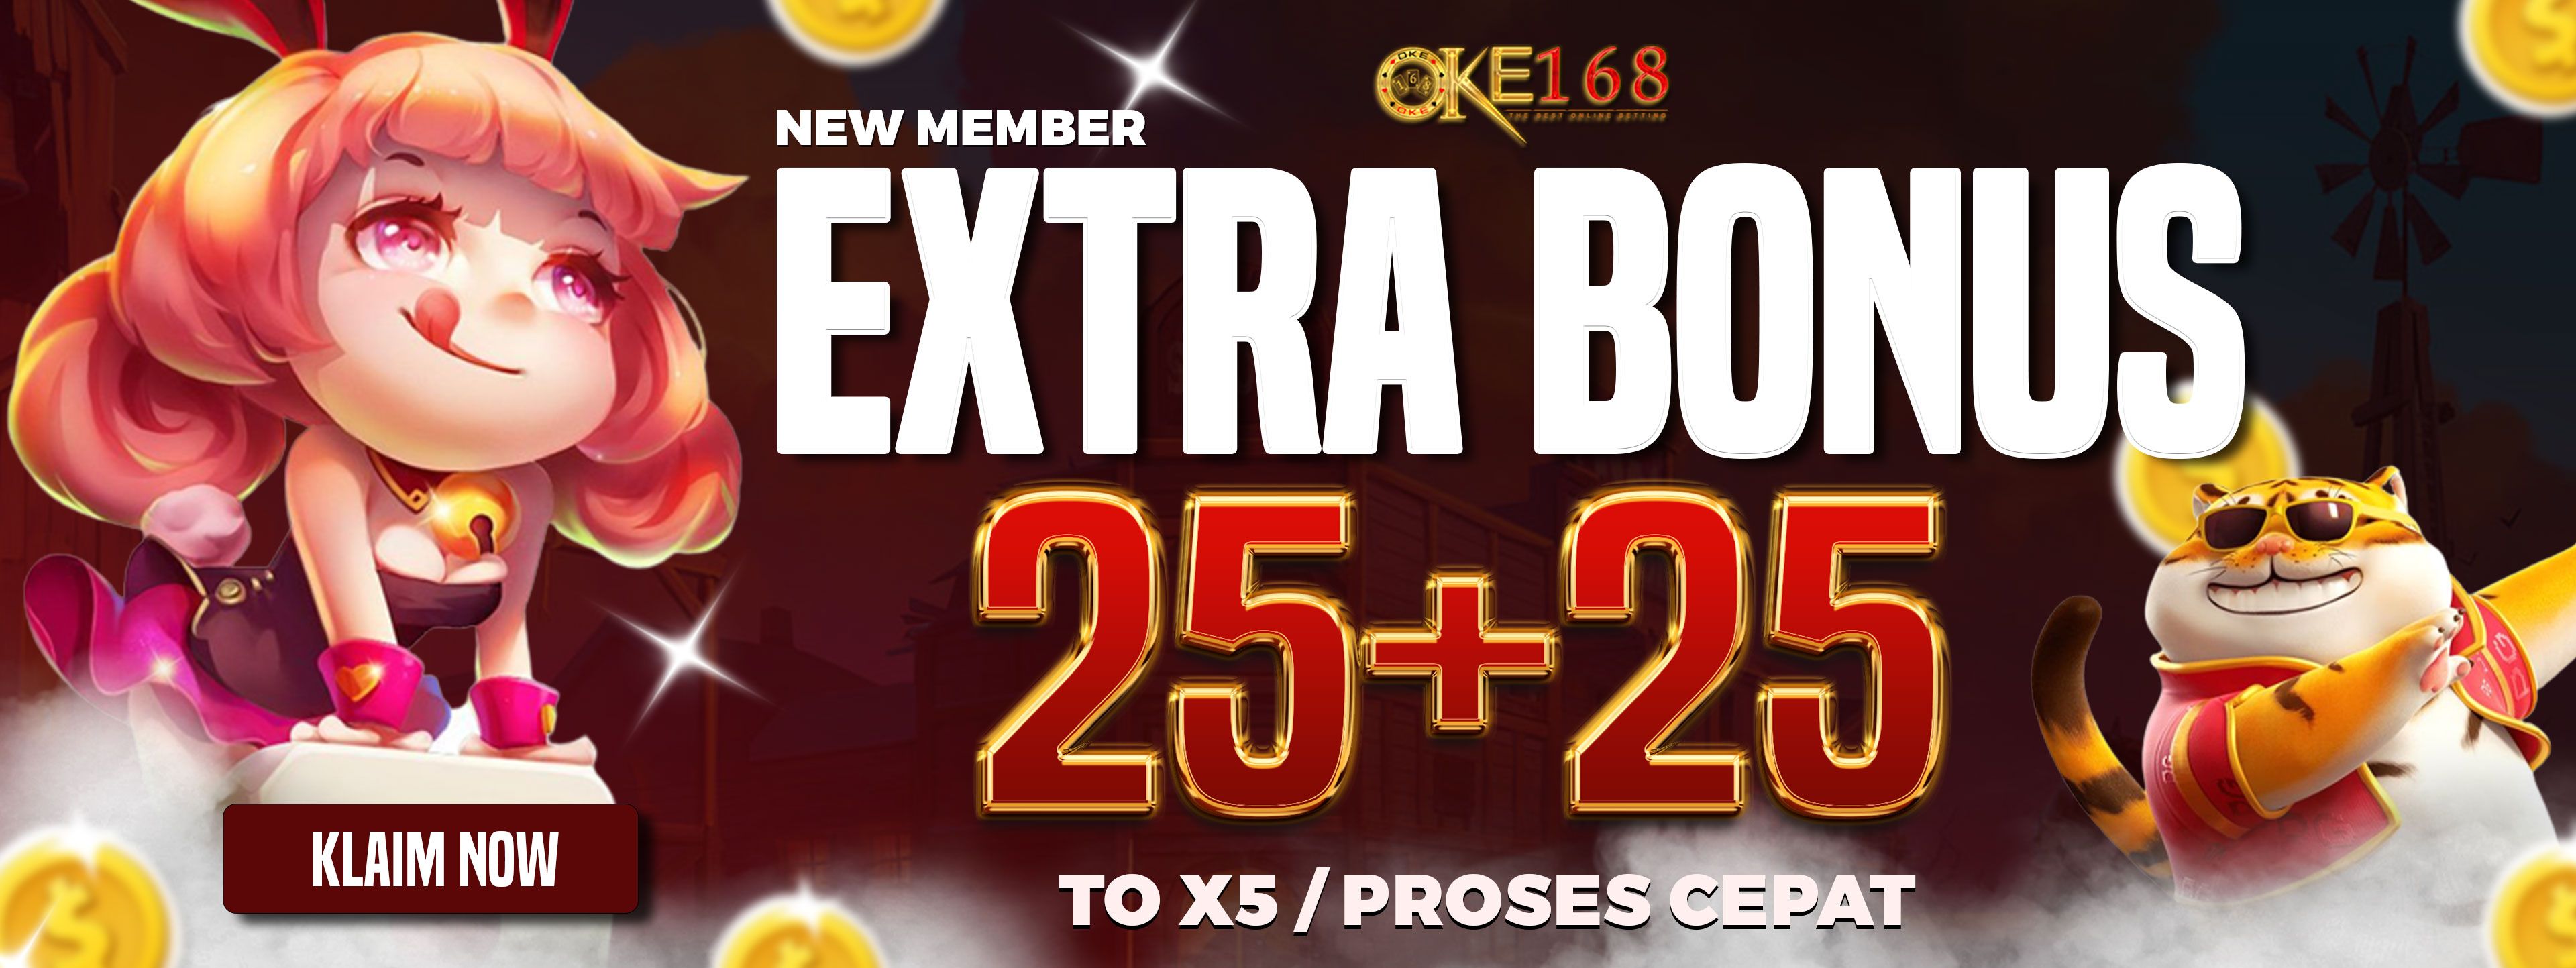 EXTRA BONUS 25+25